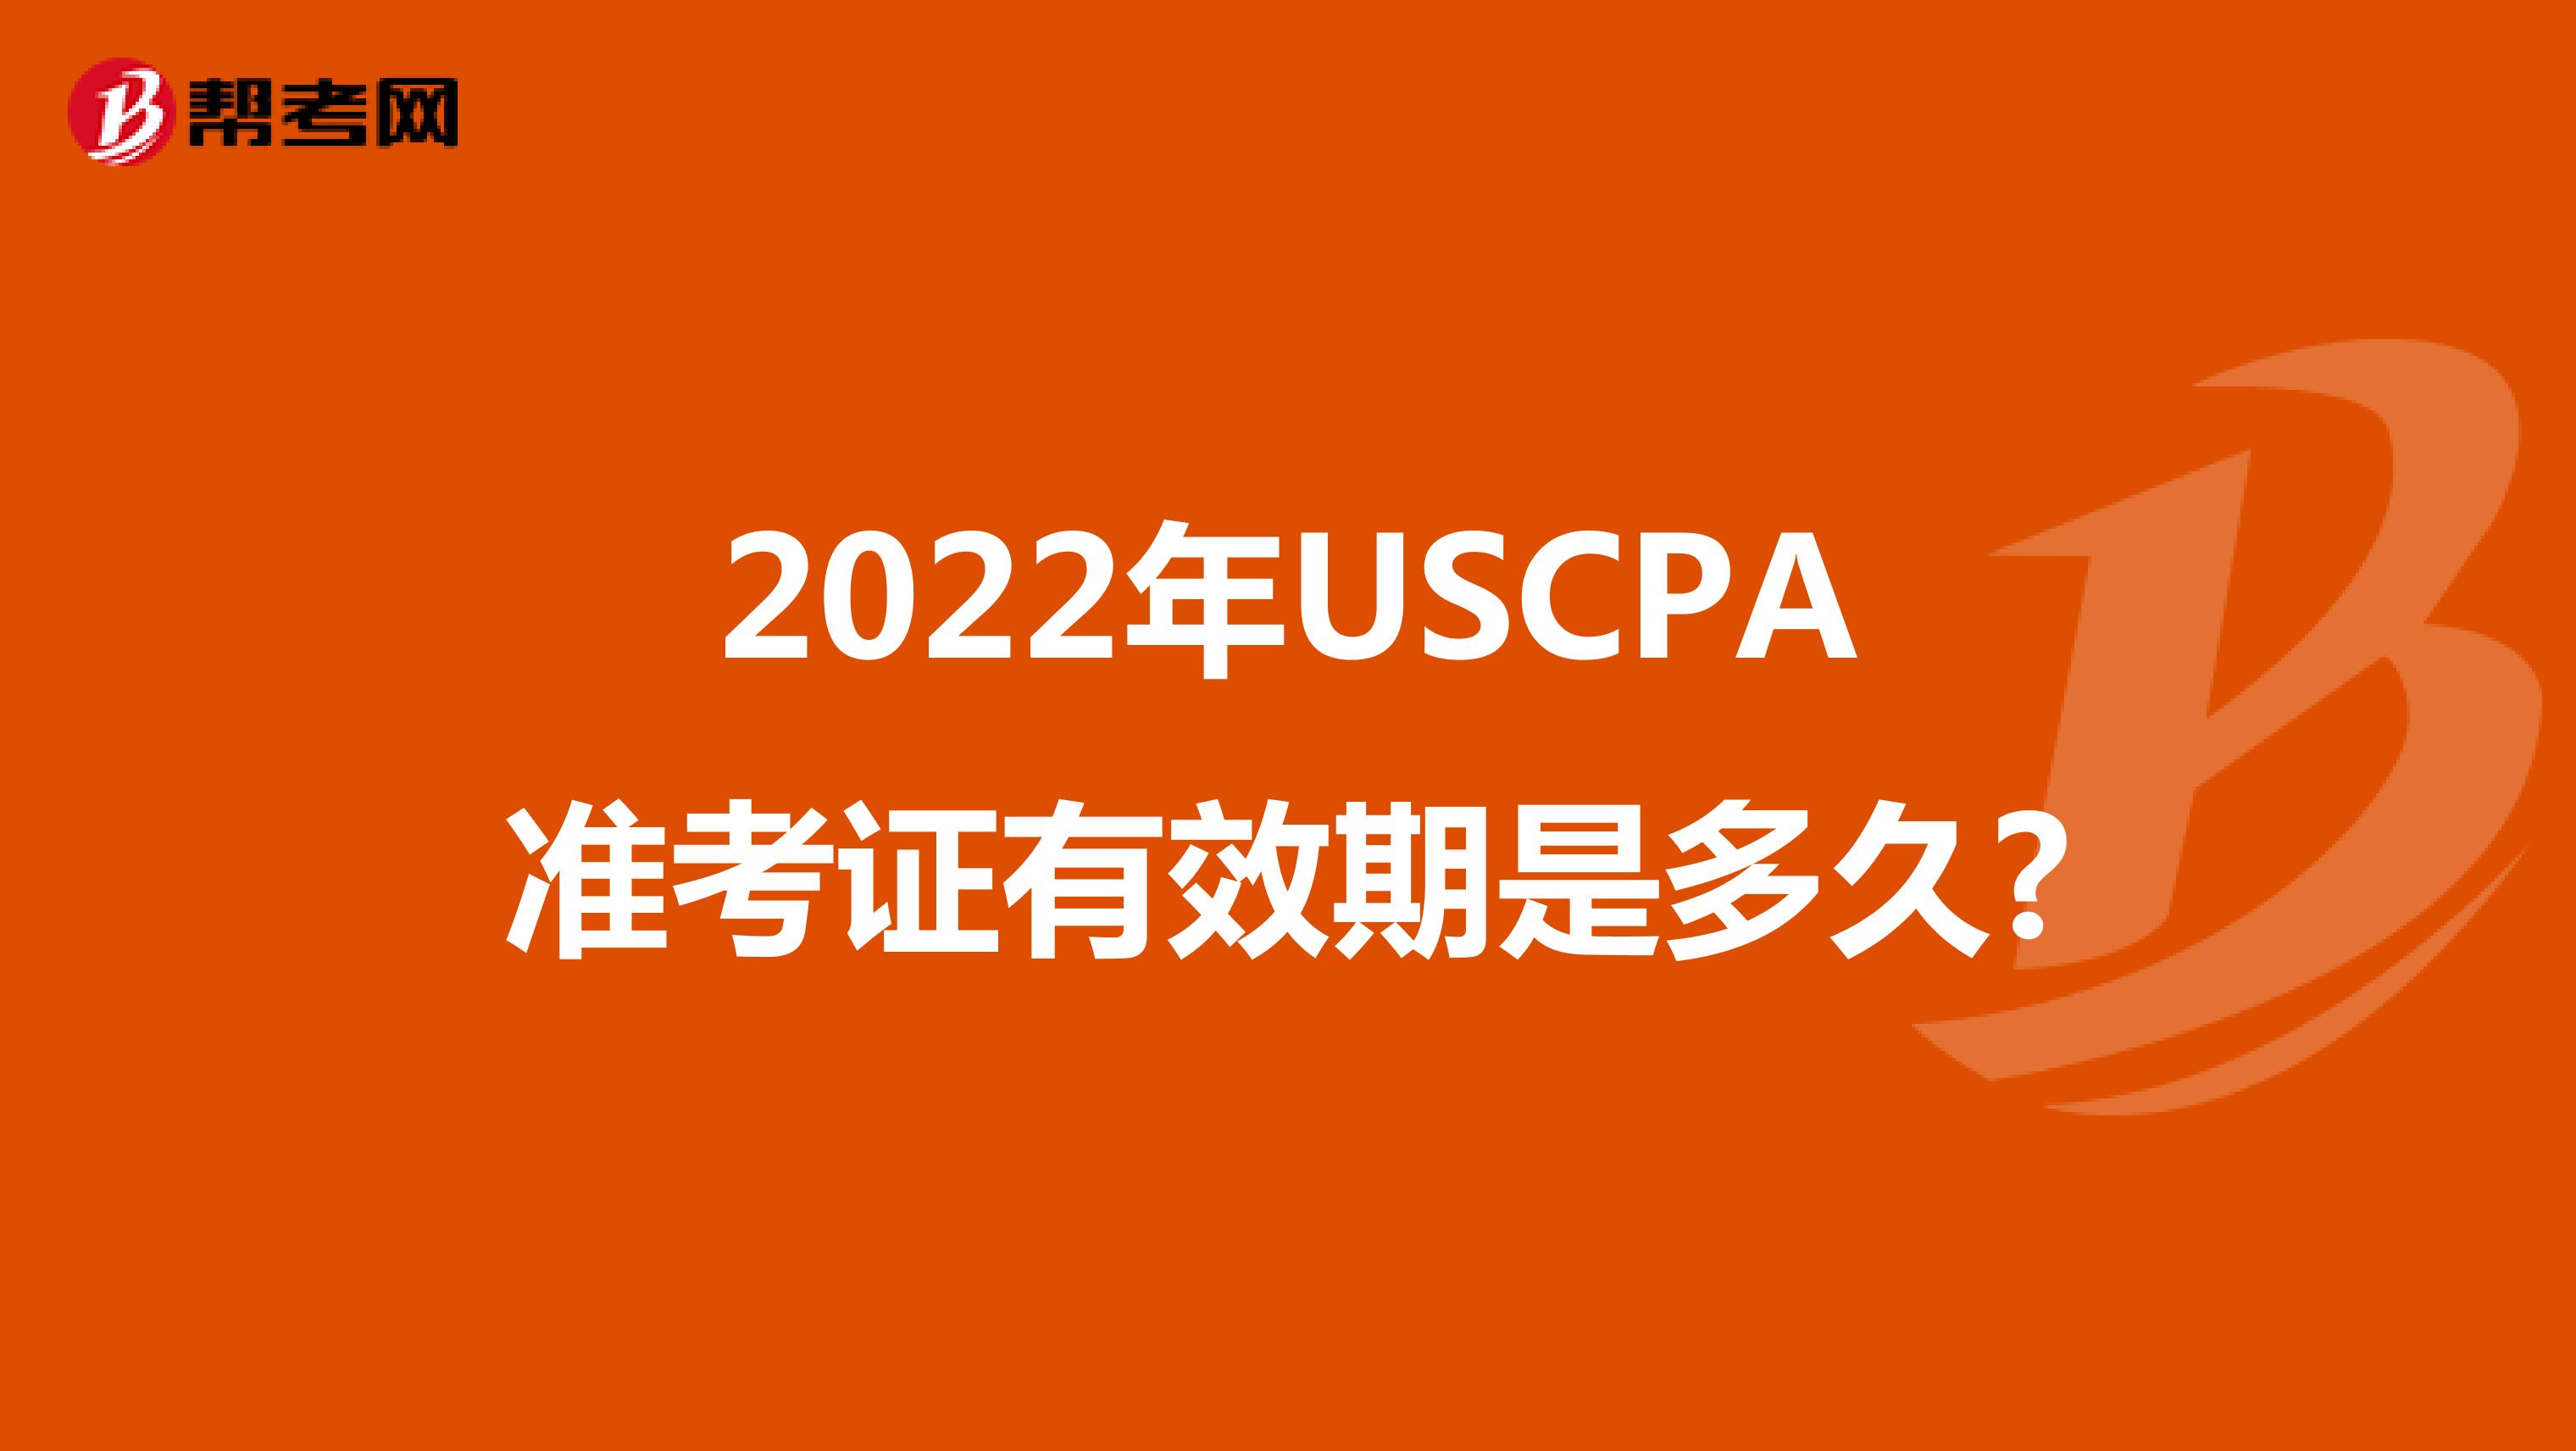 2022年USCPA准考证有效期是多久?